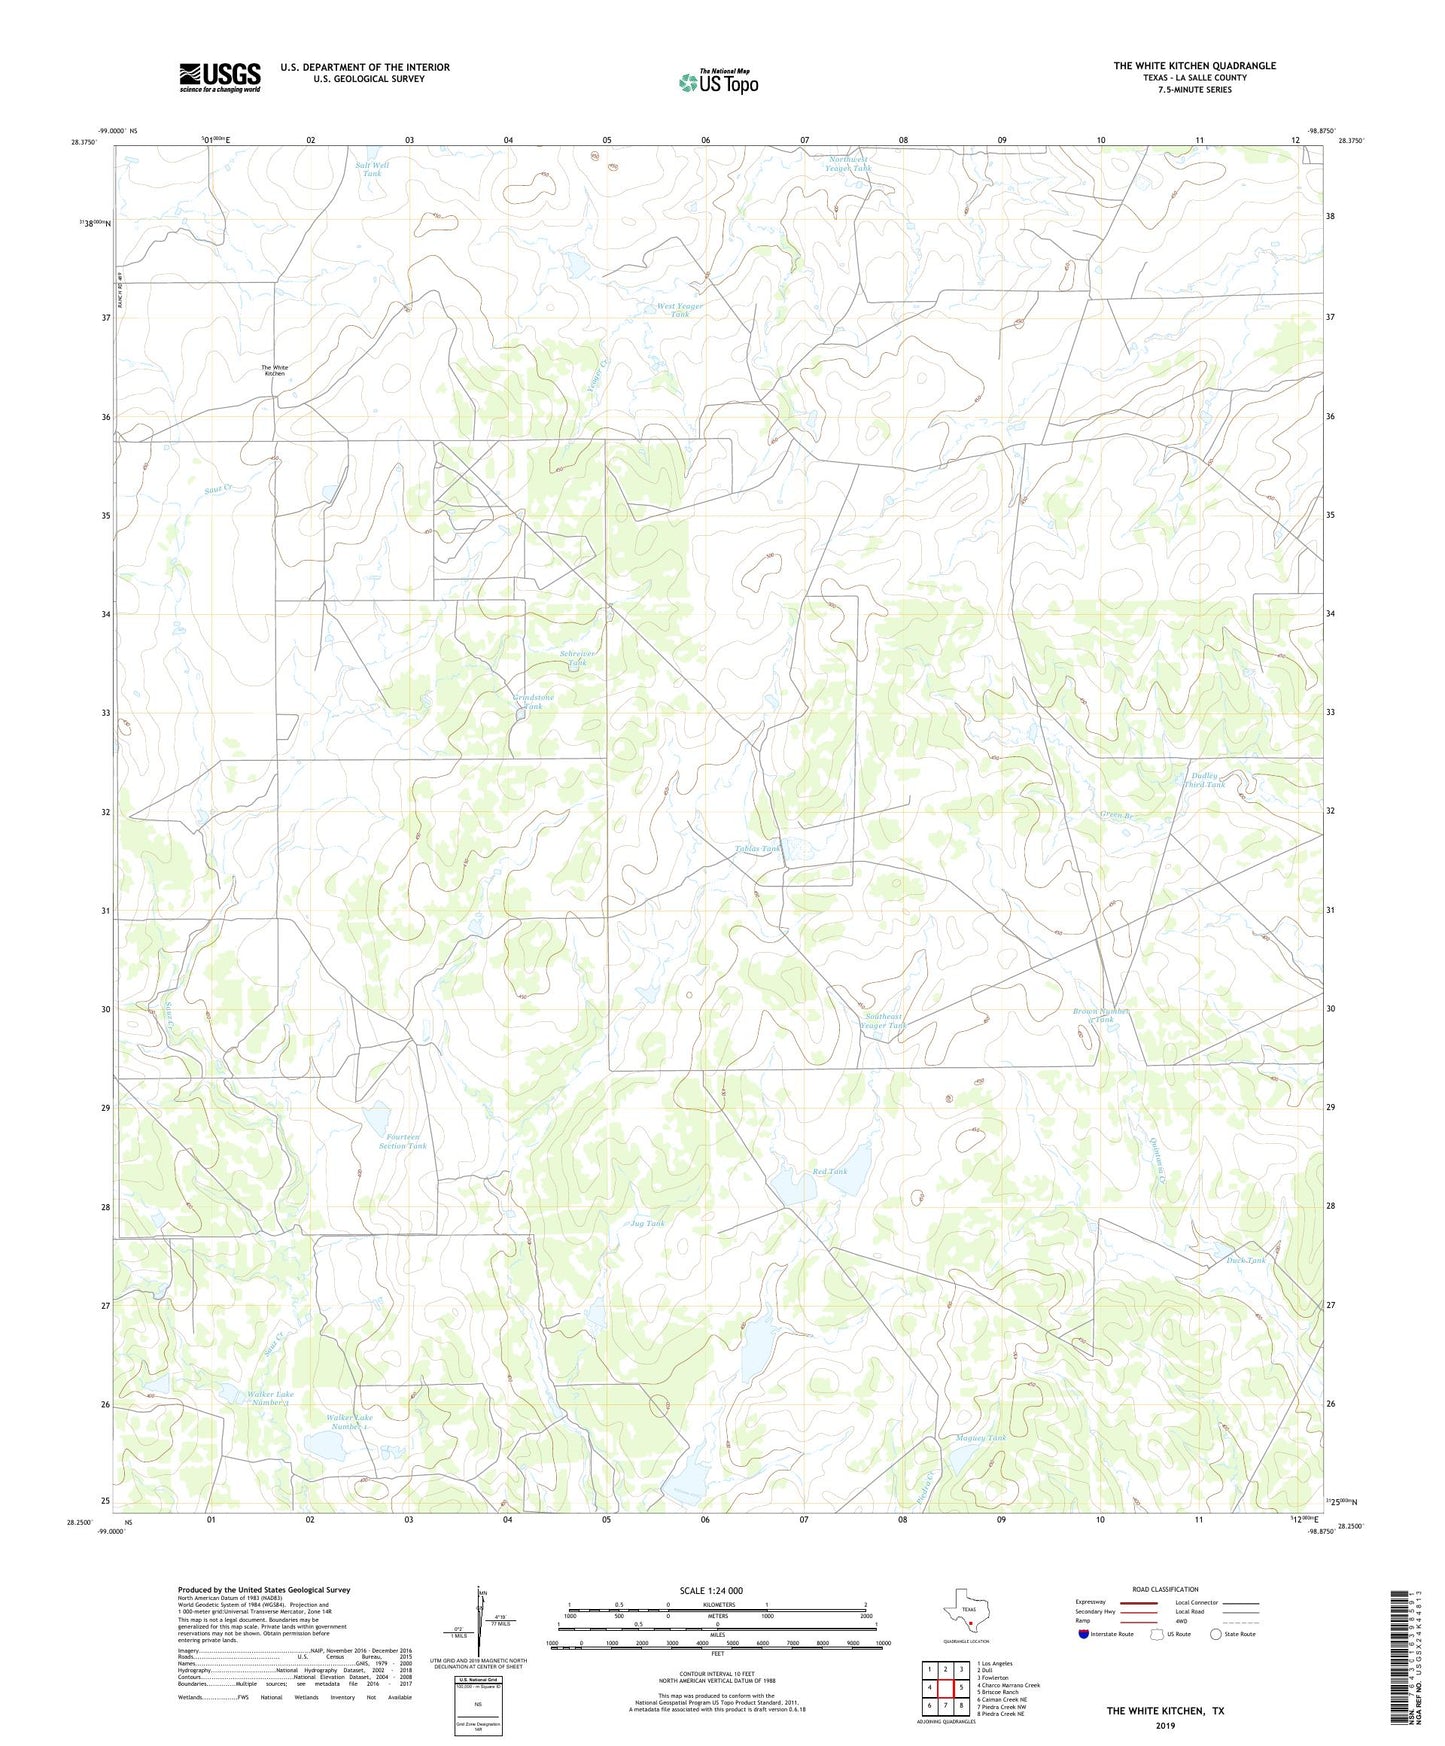 The White Kitchen Texas US Topo Map Image